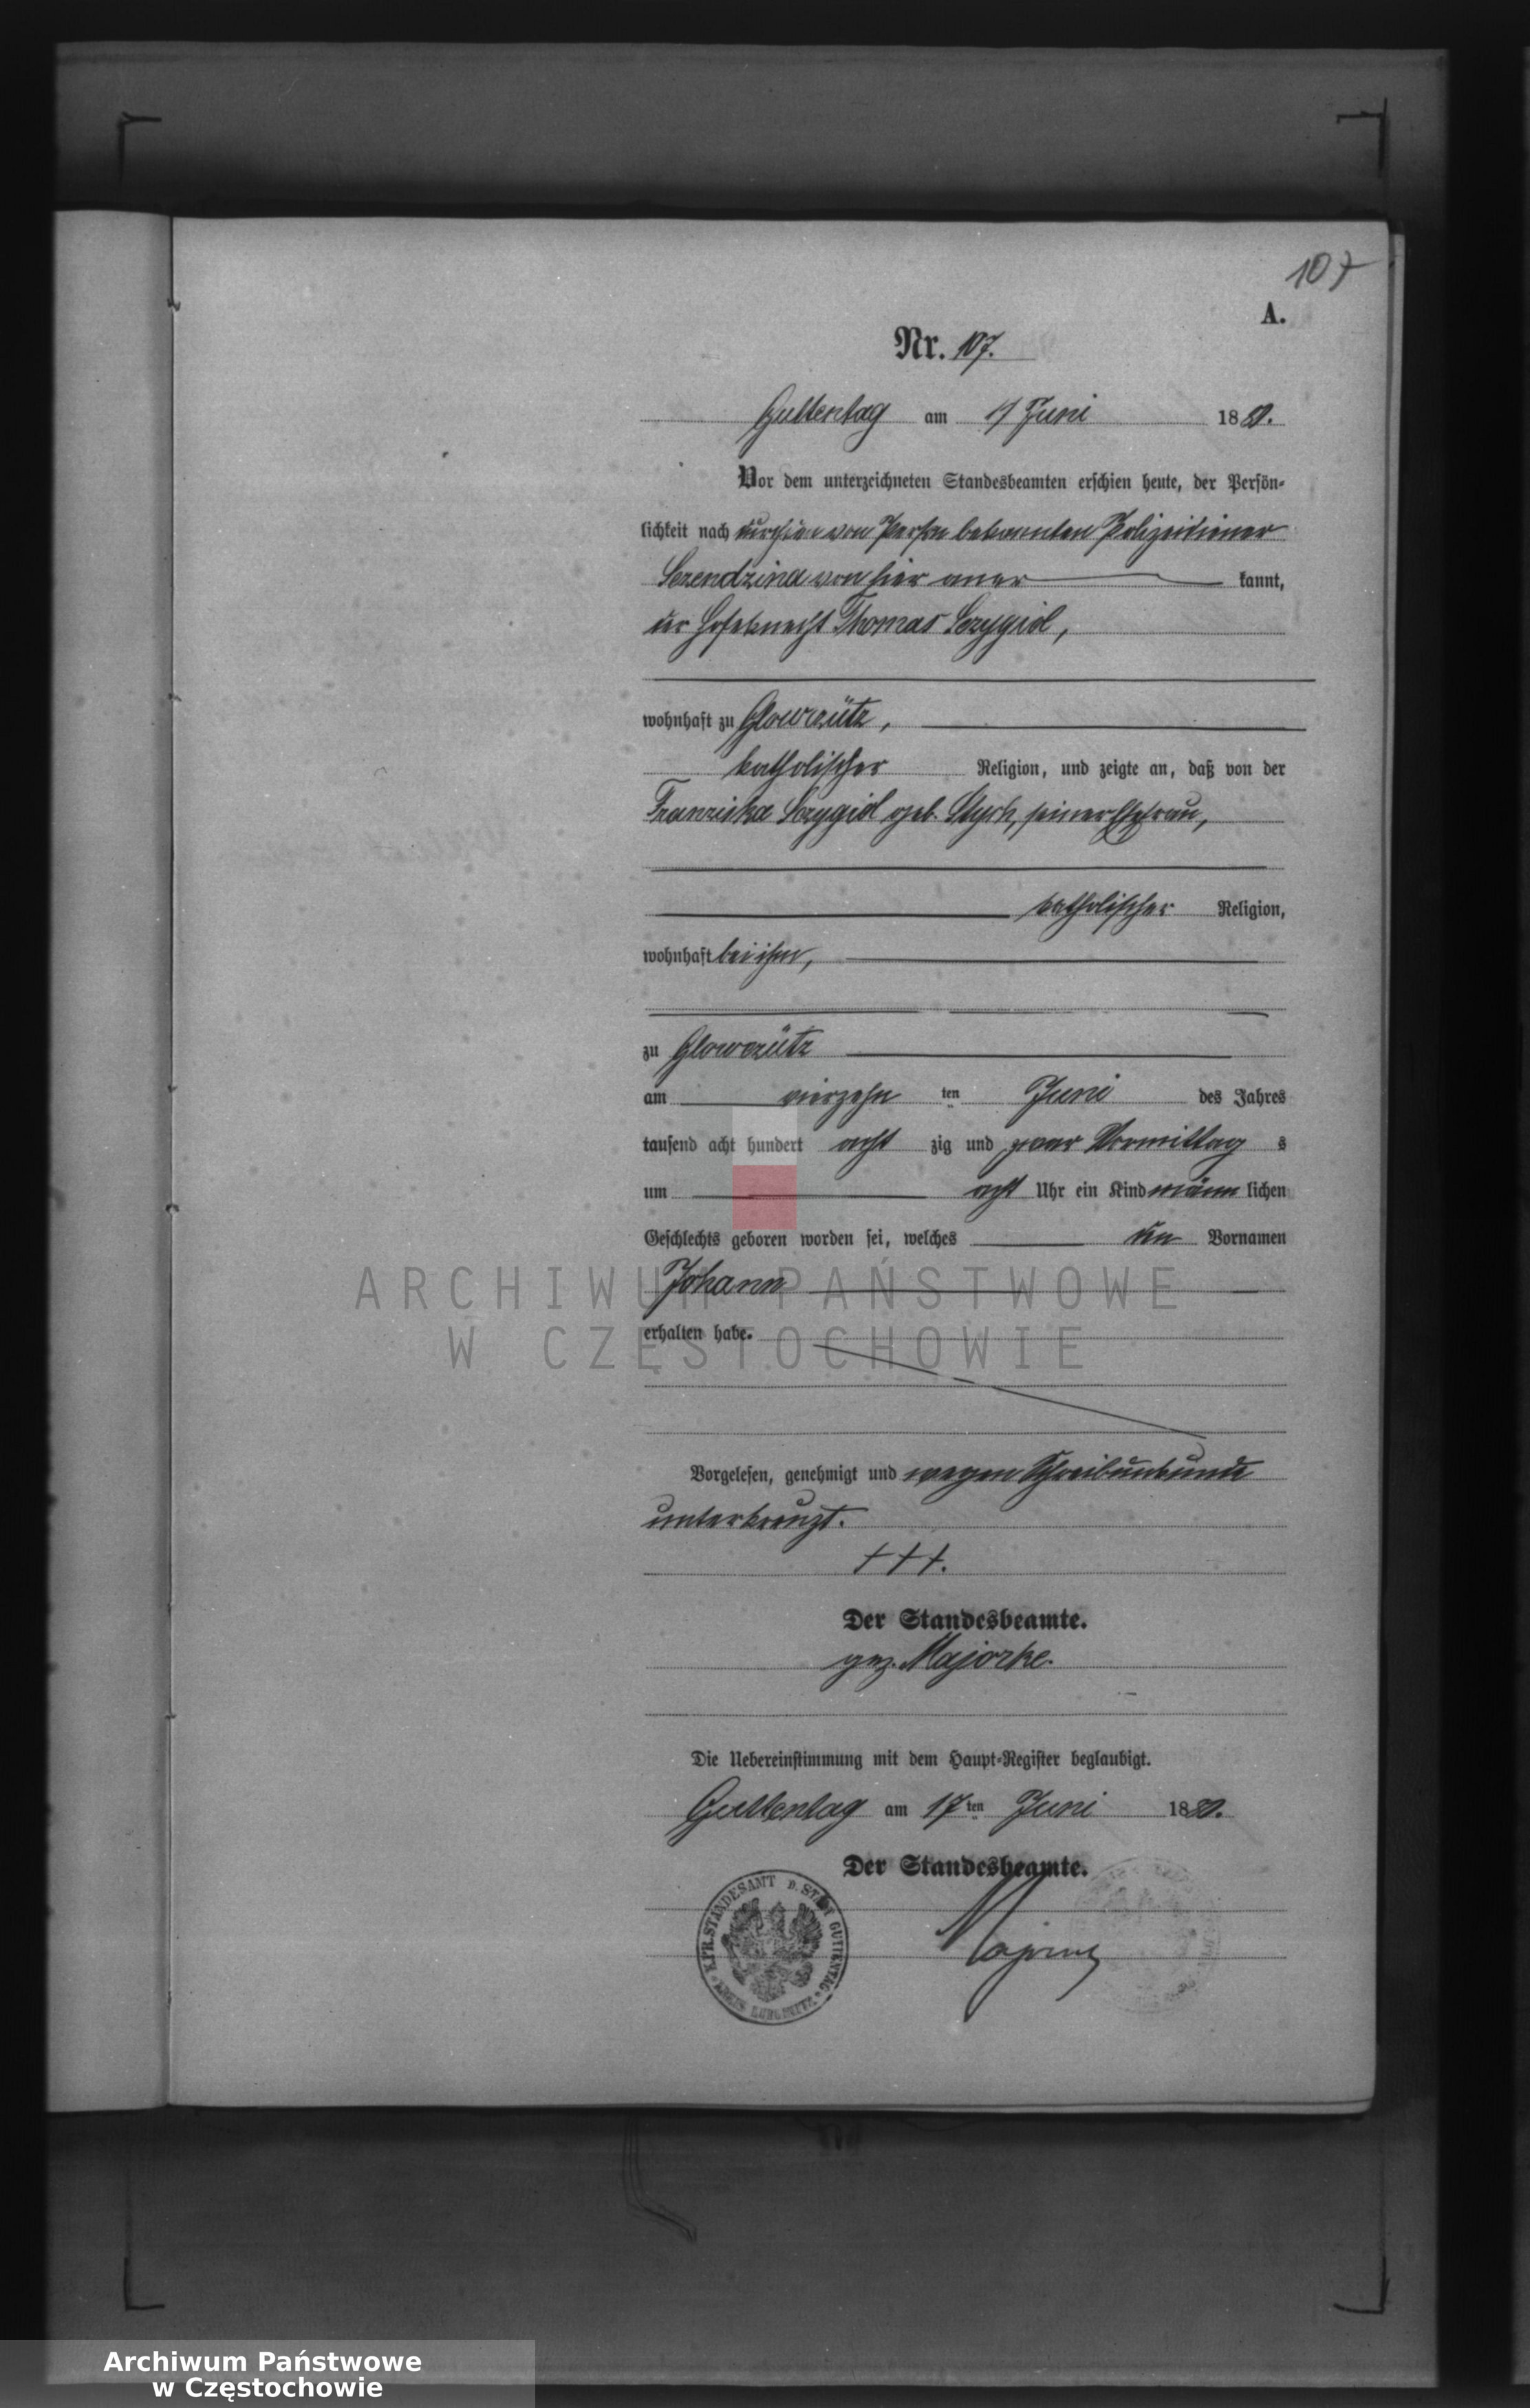 Skan z jednostki: Geburts - Neben Register des Königlich Preussischen Standesamts Guttentag im Kreise Lublinitz pro 1880.